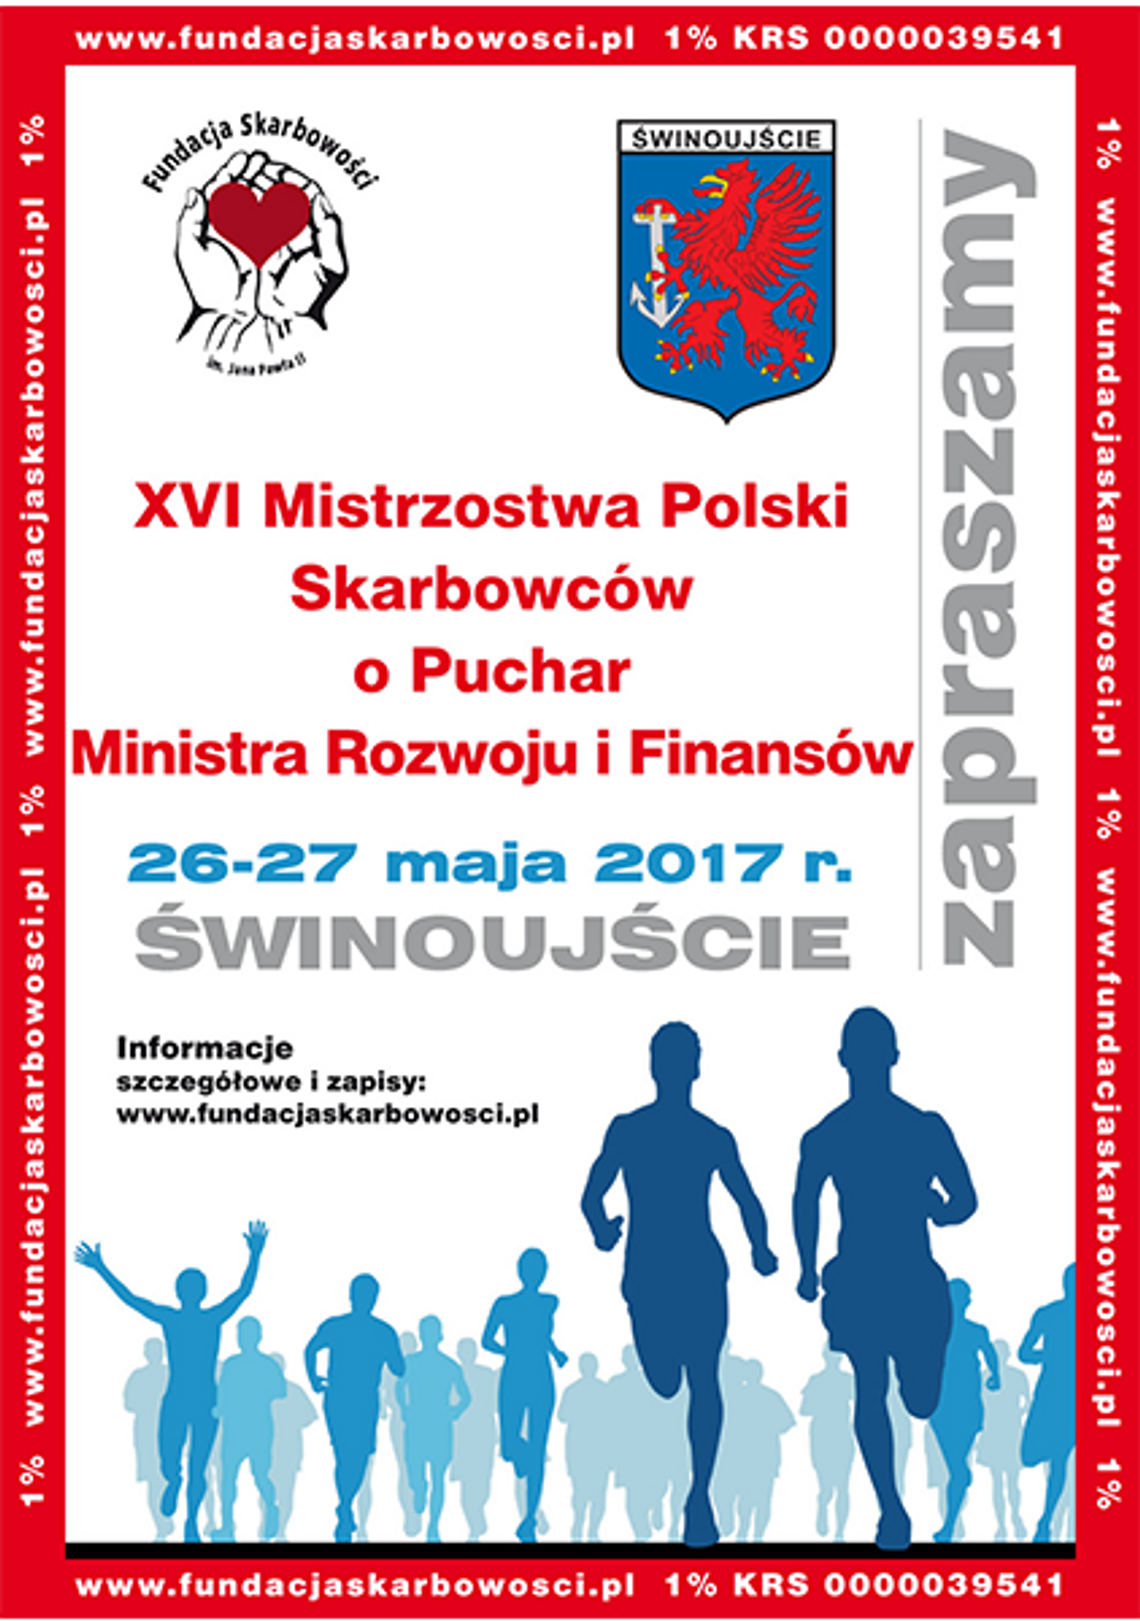 XVI Mistrzostwa Polski Skarbowców w Świnoujściu